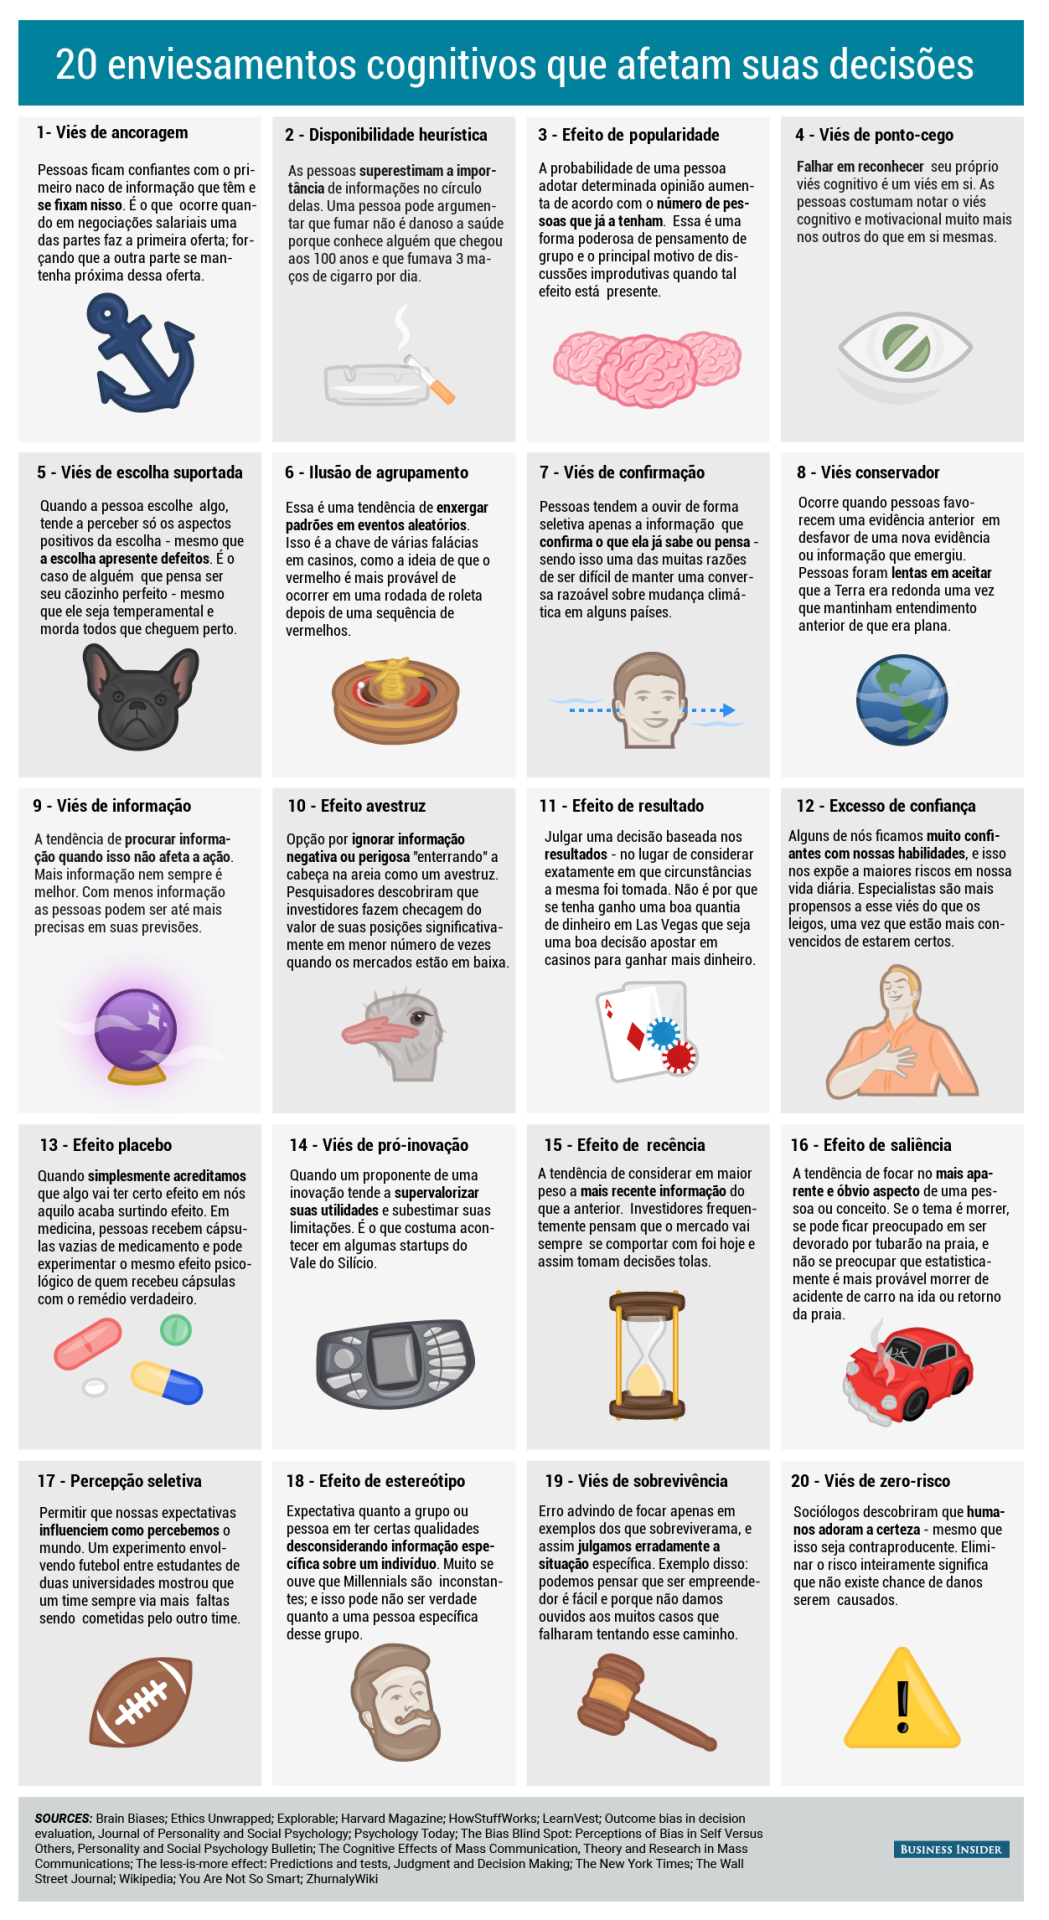 tabela com 20 diferentes tipos de enviesamentos cognitivos